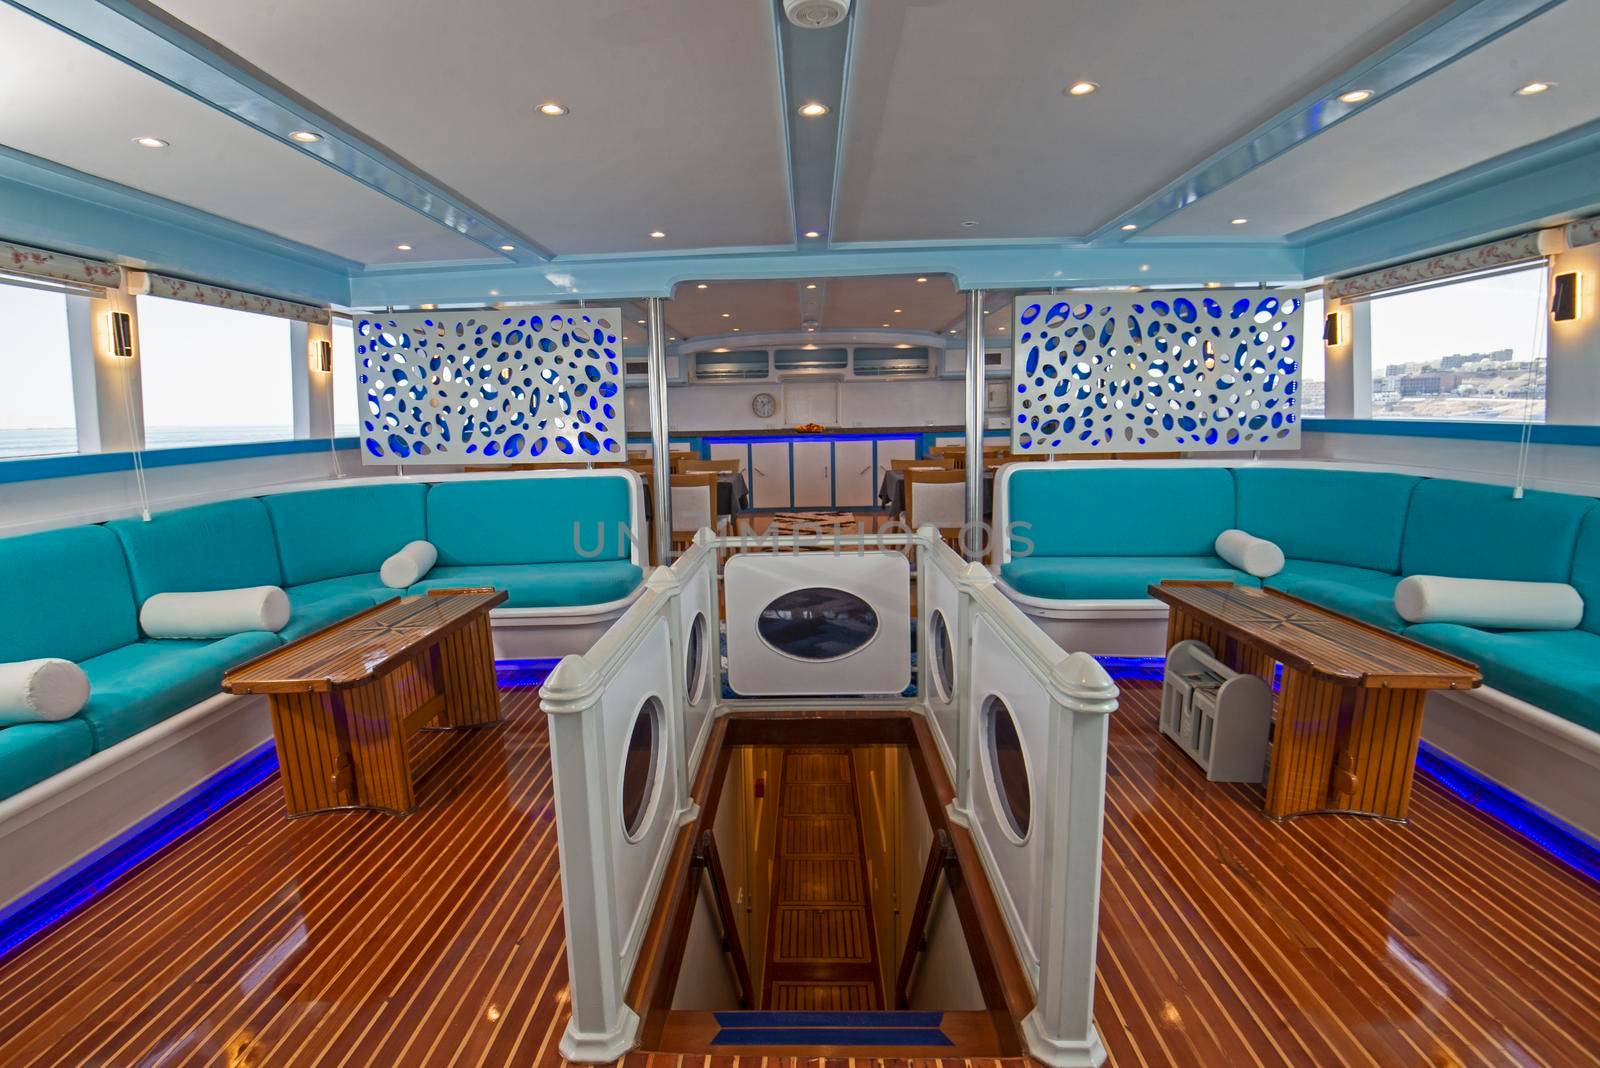 Interior design of large salon area on luxury motor yacht by paulvinten